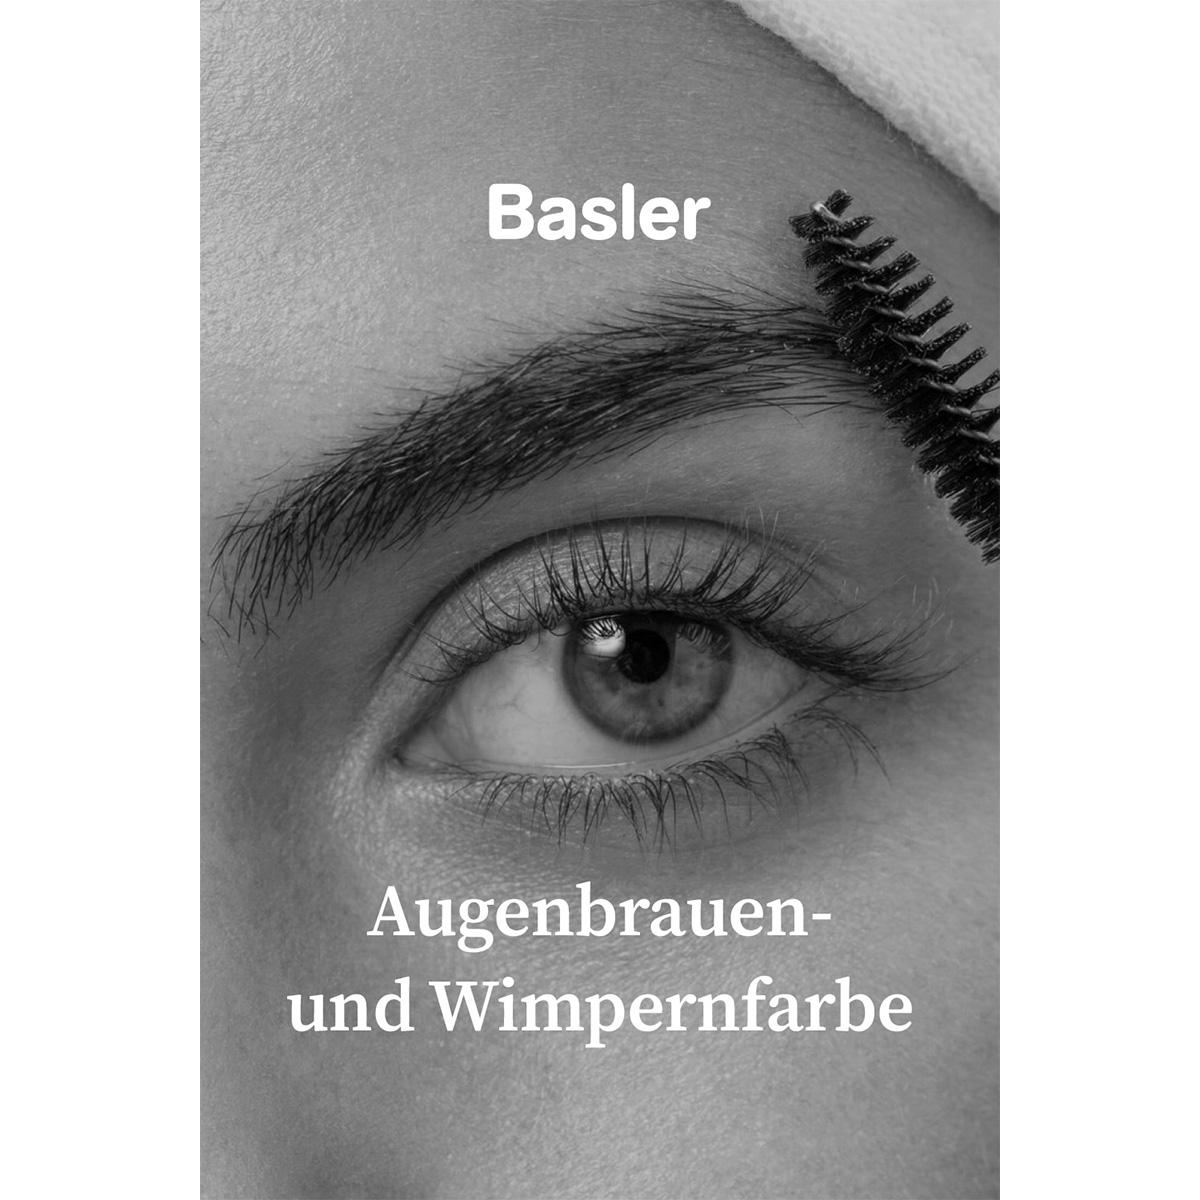 Basler Augenbrauen- und Wimpernfarbe Braun, 15 ml - 2